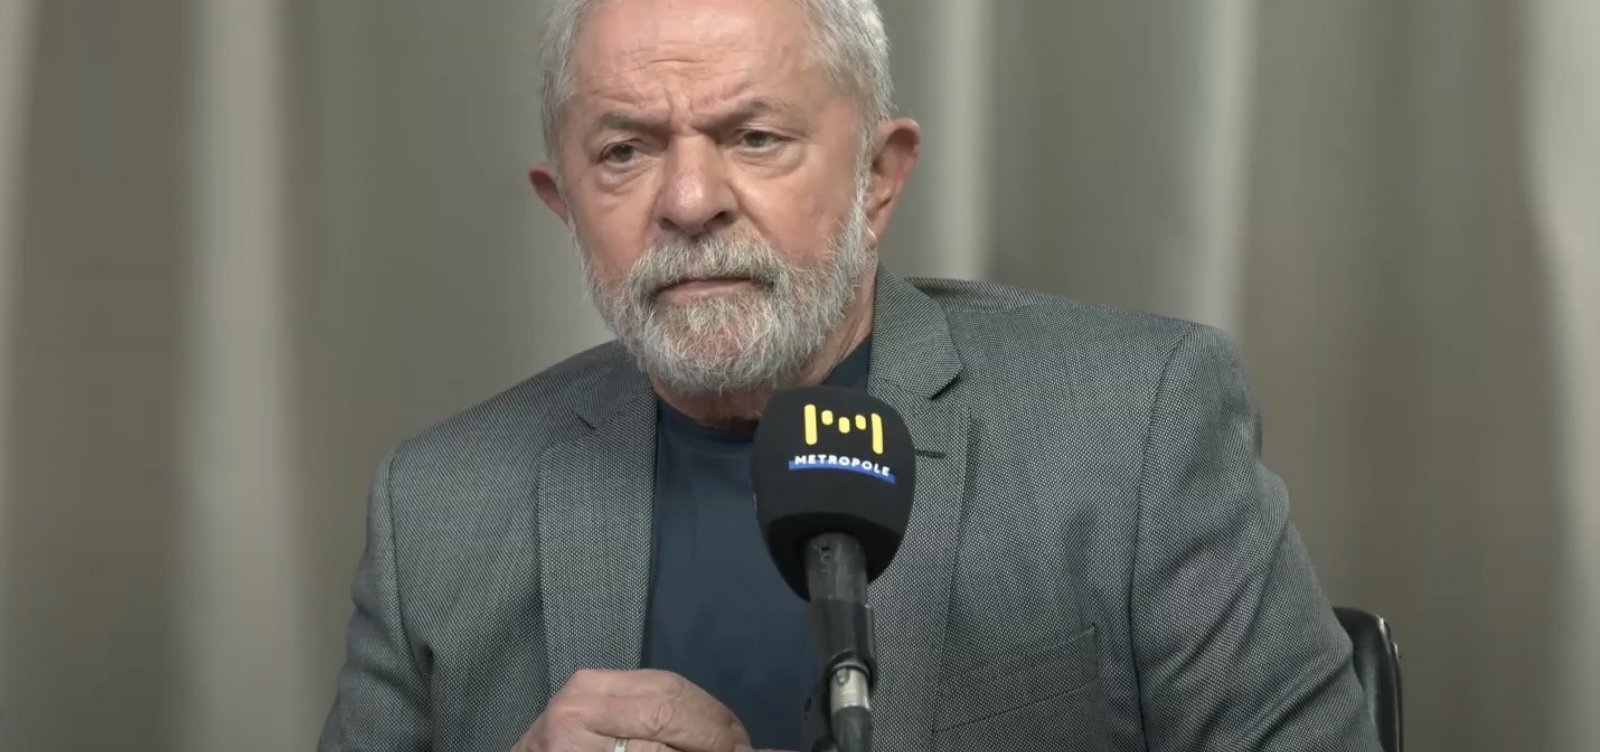 PT reforça segurança de Lula por medo de atentado, diz coluna